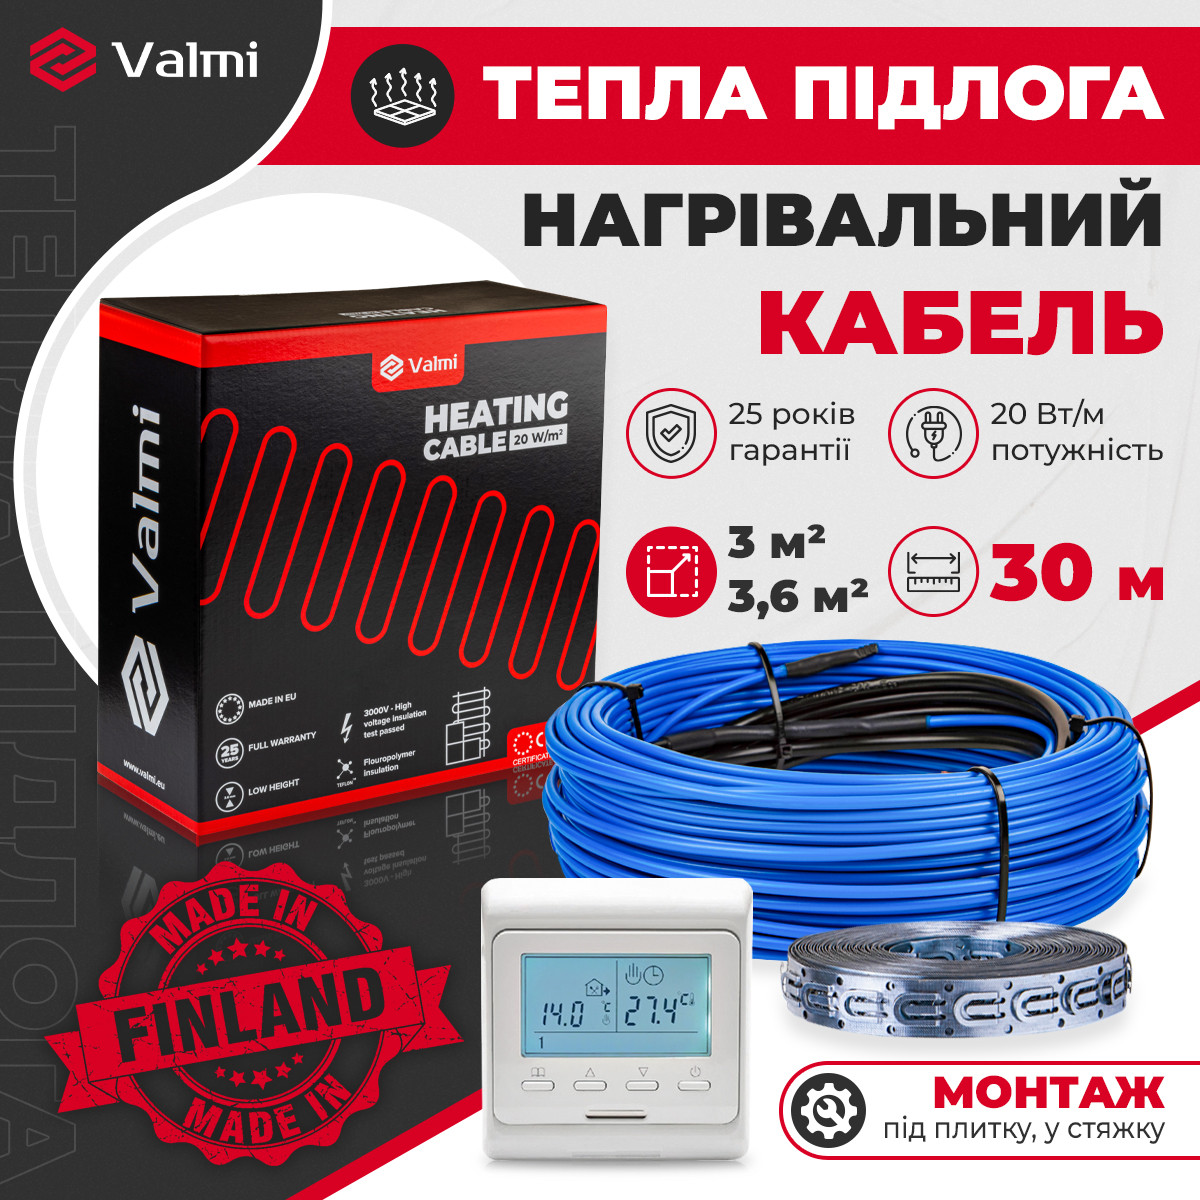 Тепла підлога Valmi 3м²- 3,6м² /600 Вт (30м) тонкий нагрівальний кабель під плитку 20 Вт/м з терморегулятором E51